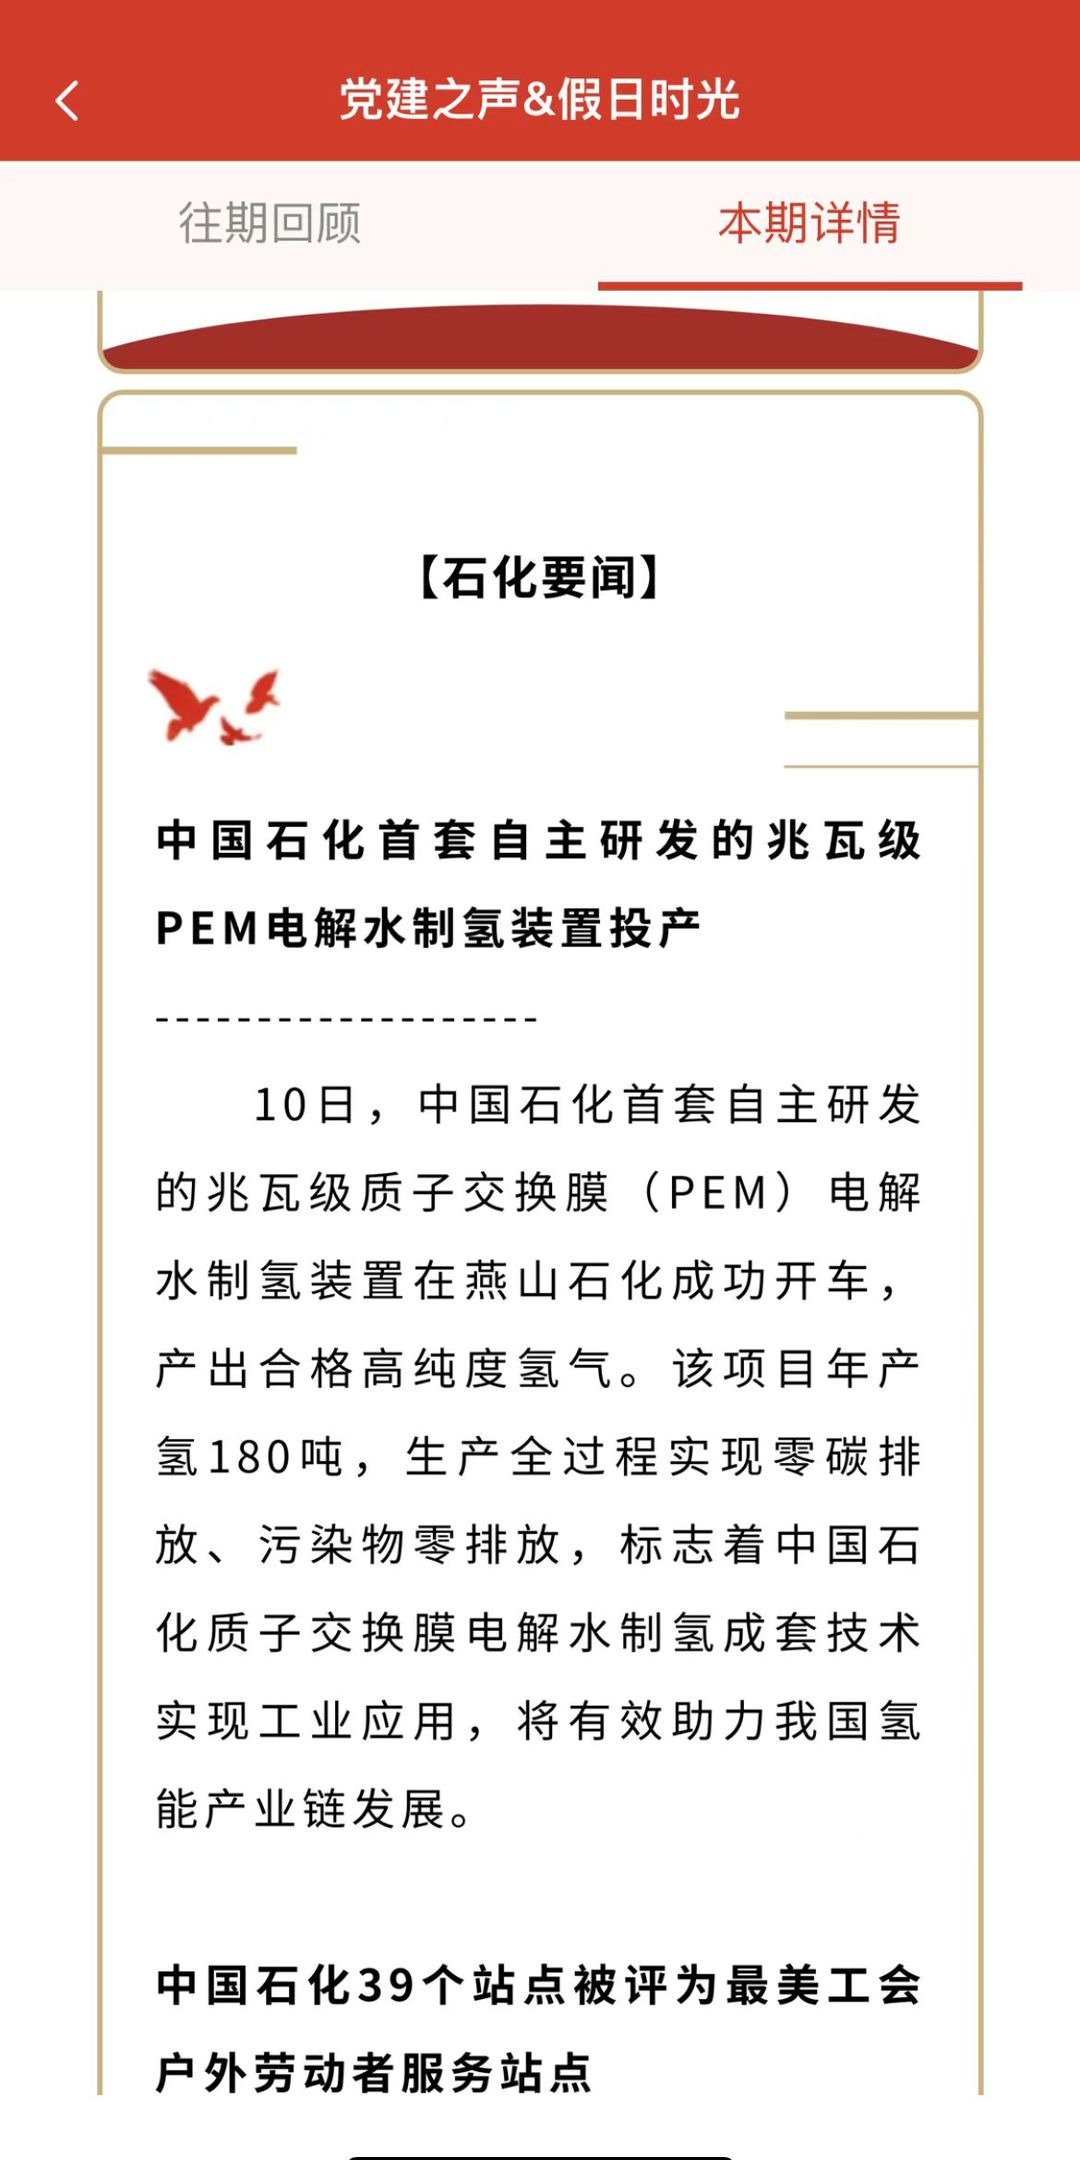 燕山石化“PEM”成为媒体关注焦点